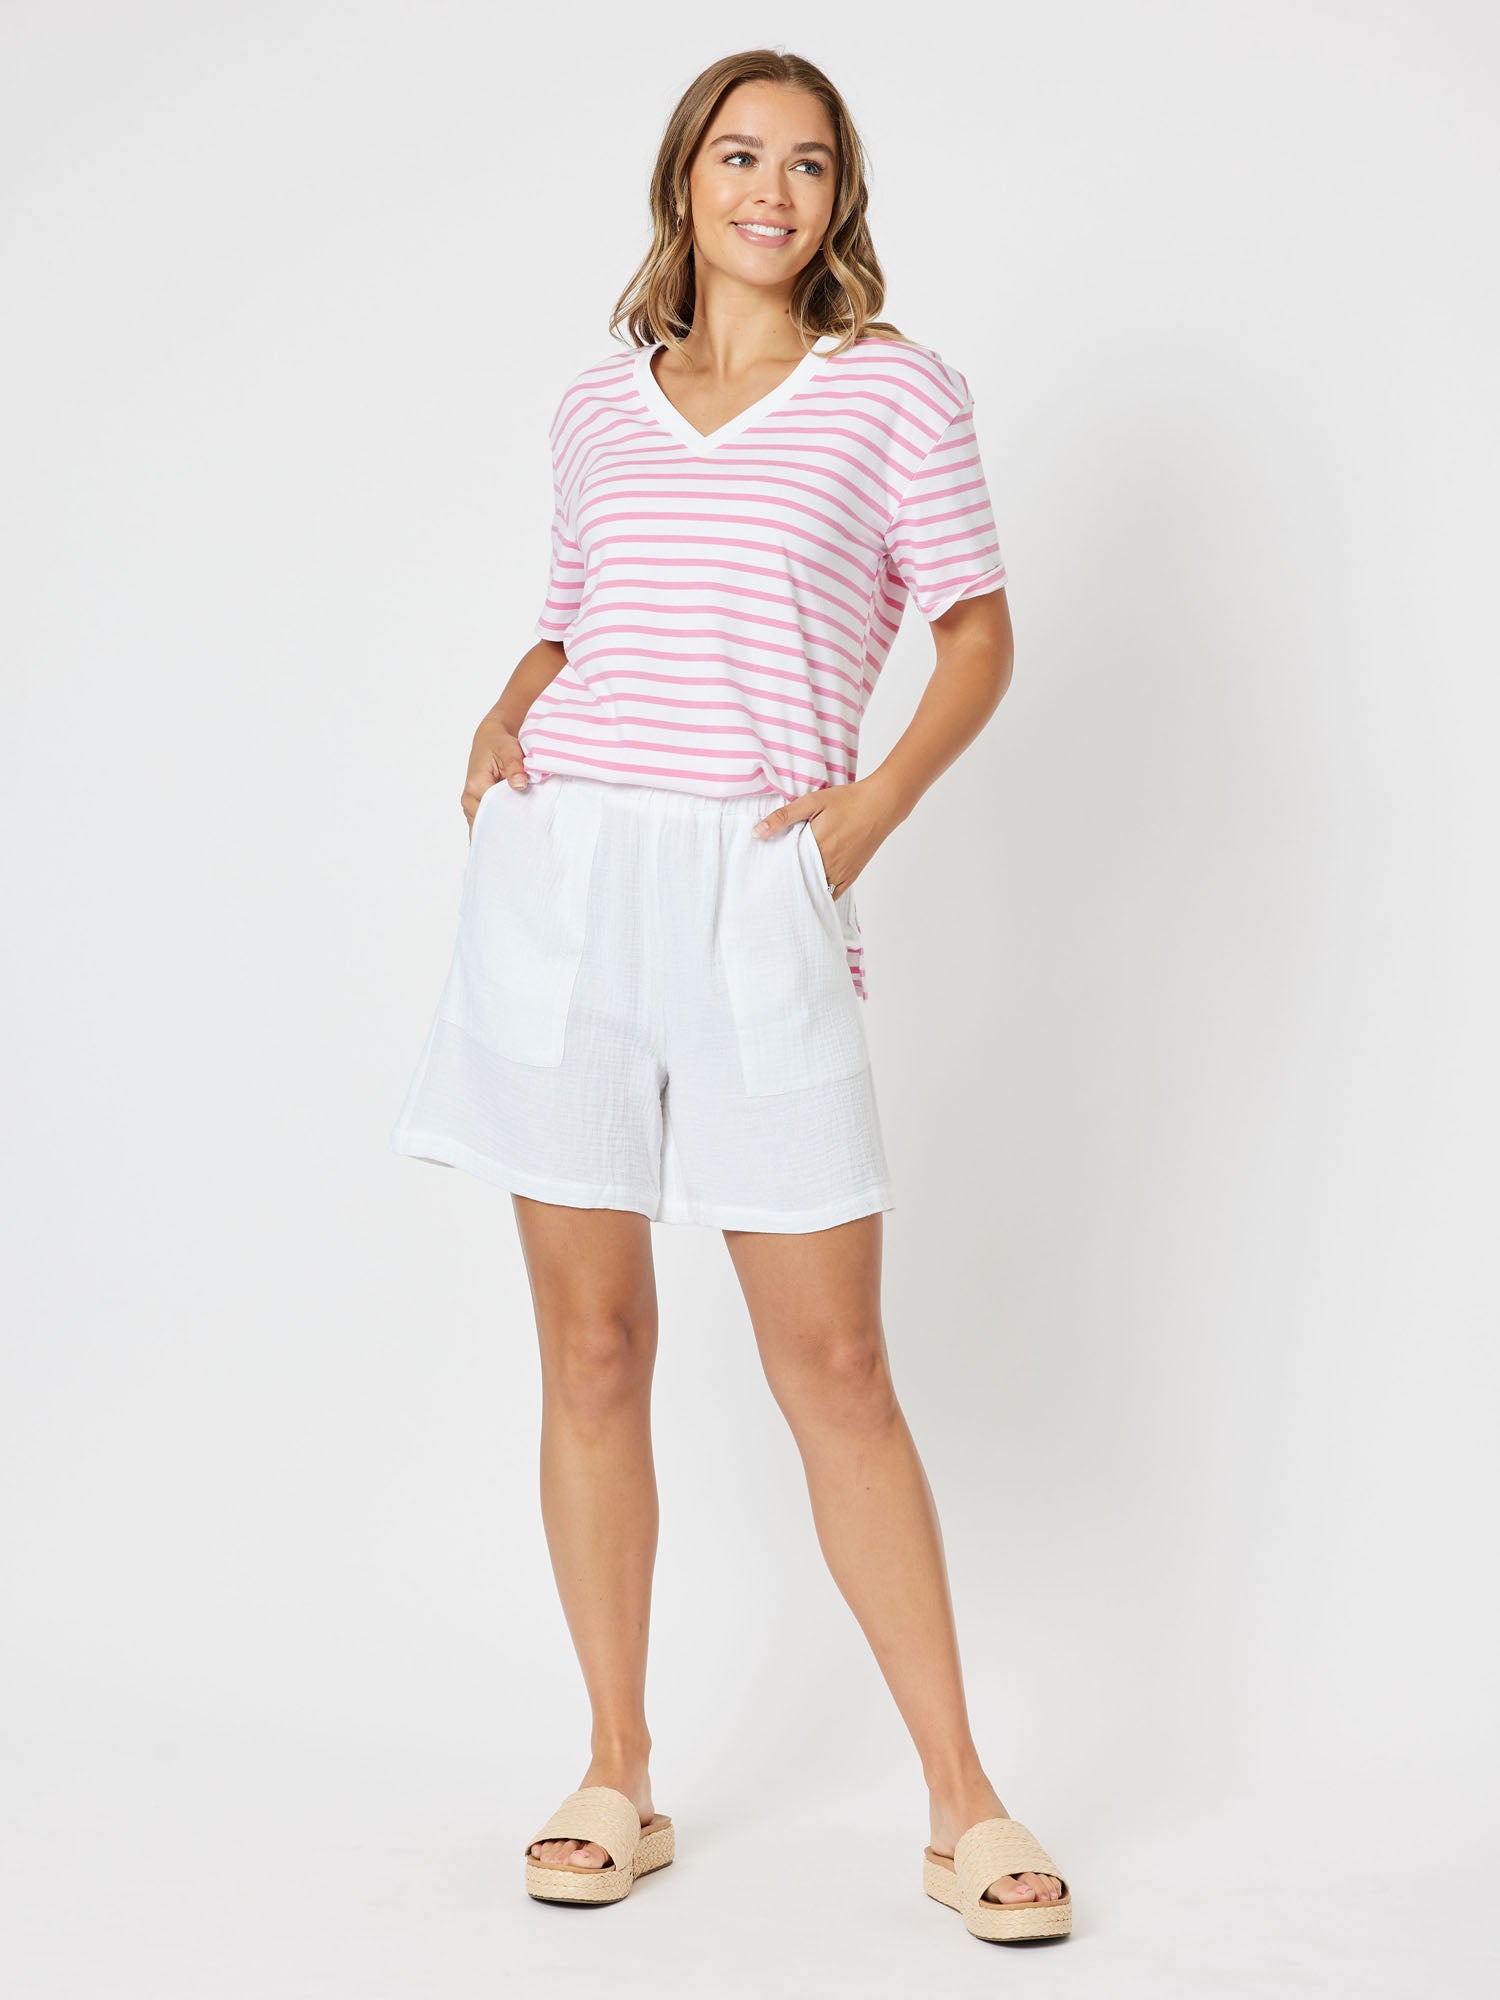 Sailor Stripe Knit Top Vneck Short Sleeve Tshirt - Pink